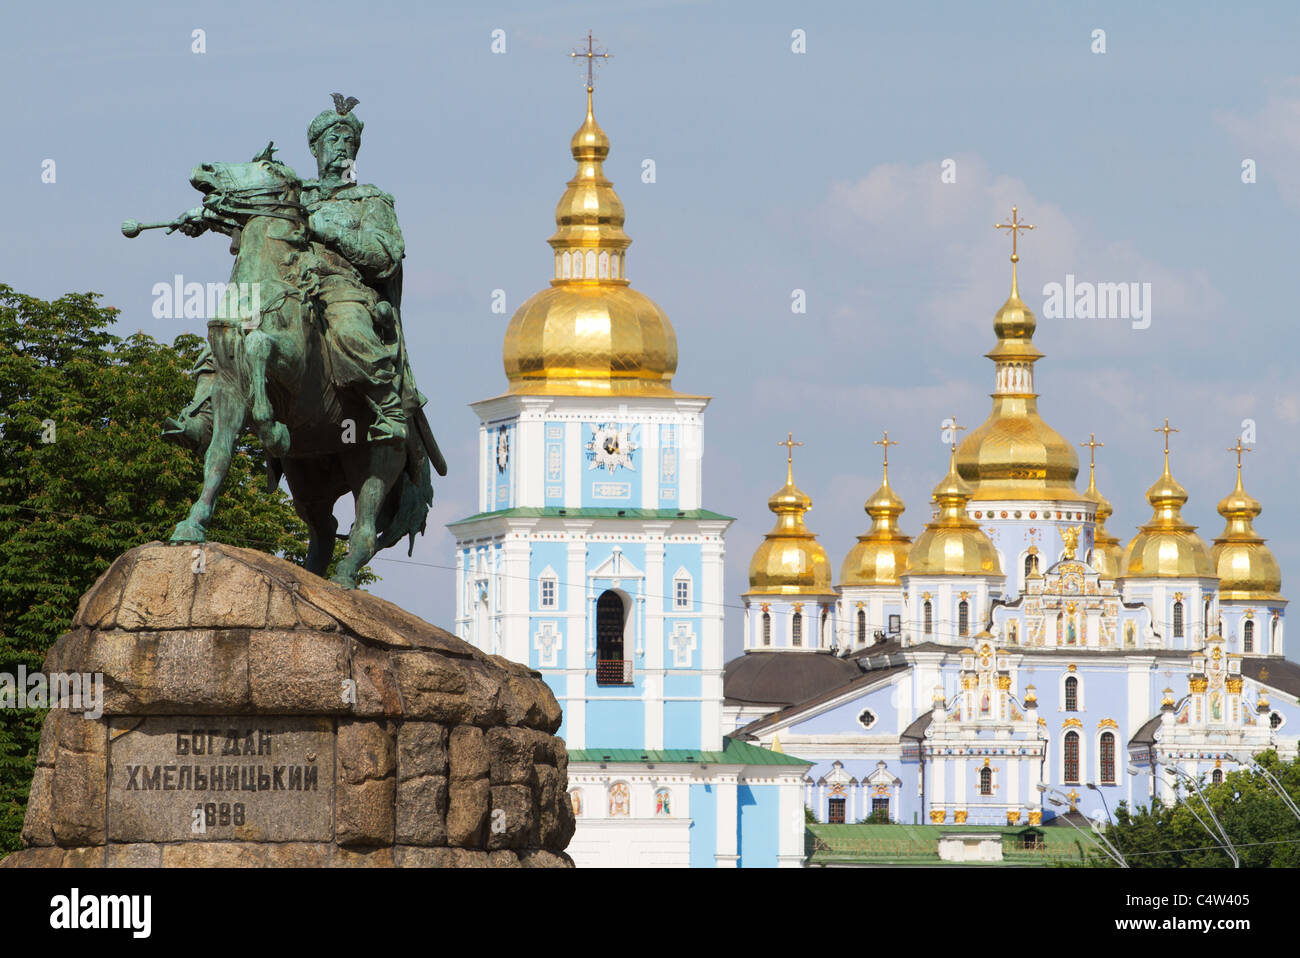 Monument of famous Ukrainian Hetman Bogdan Khmelnitsky in front of St. Michael's Golden-Domed Monastery in Kiev, Ukraine Stock Photo